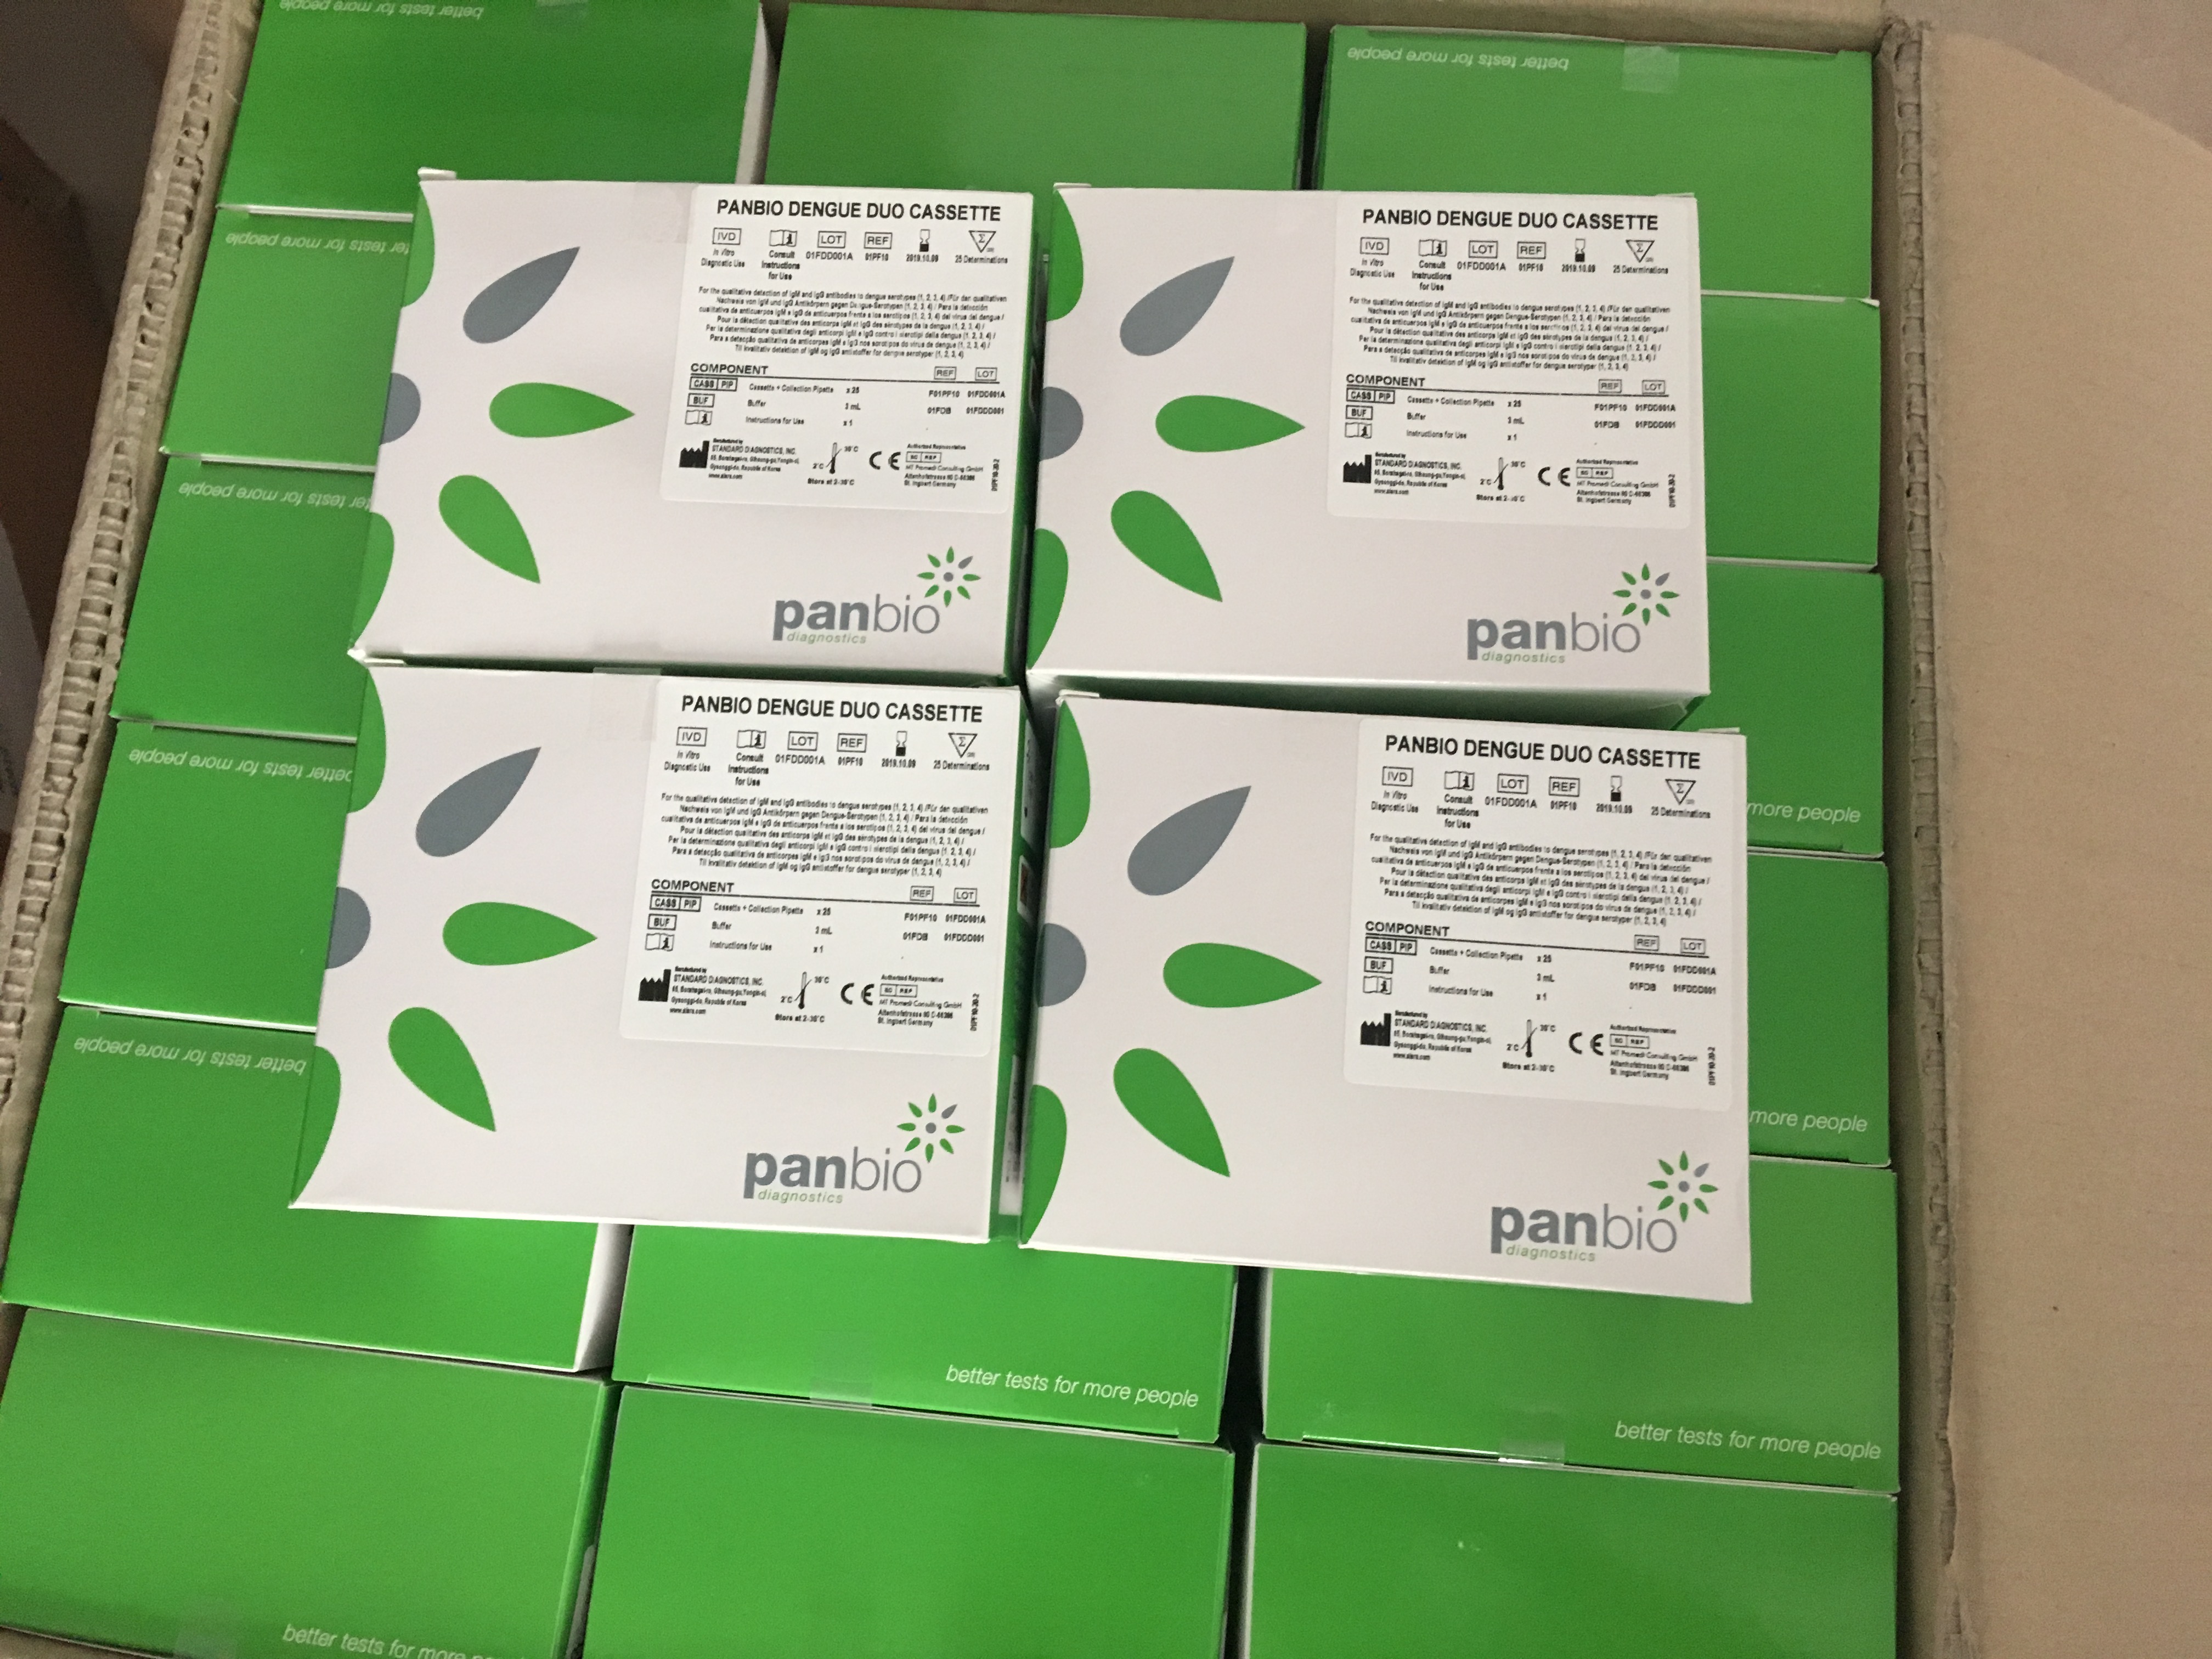 PANBIO登革熱早期檢測試劑